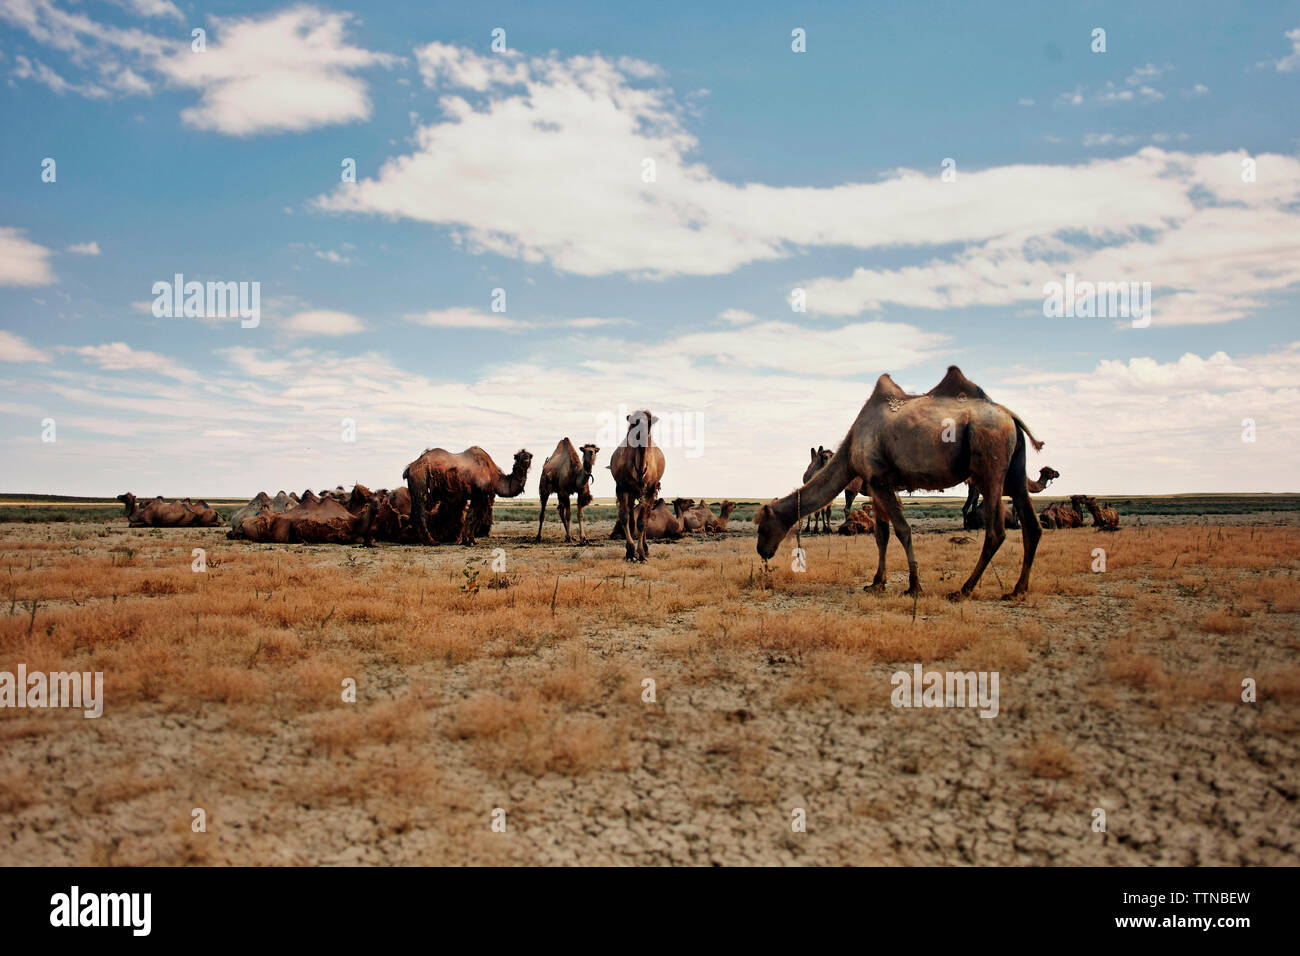 Les chameaux au paysage aride contre ciel lors de journée ensoleillée Banque D'Images